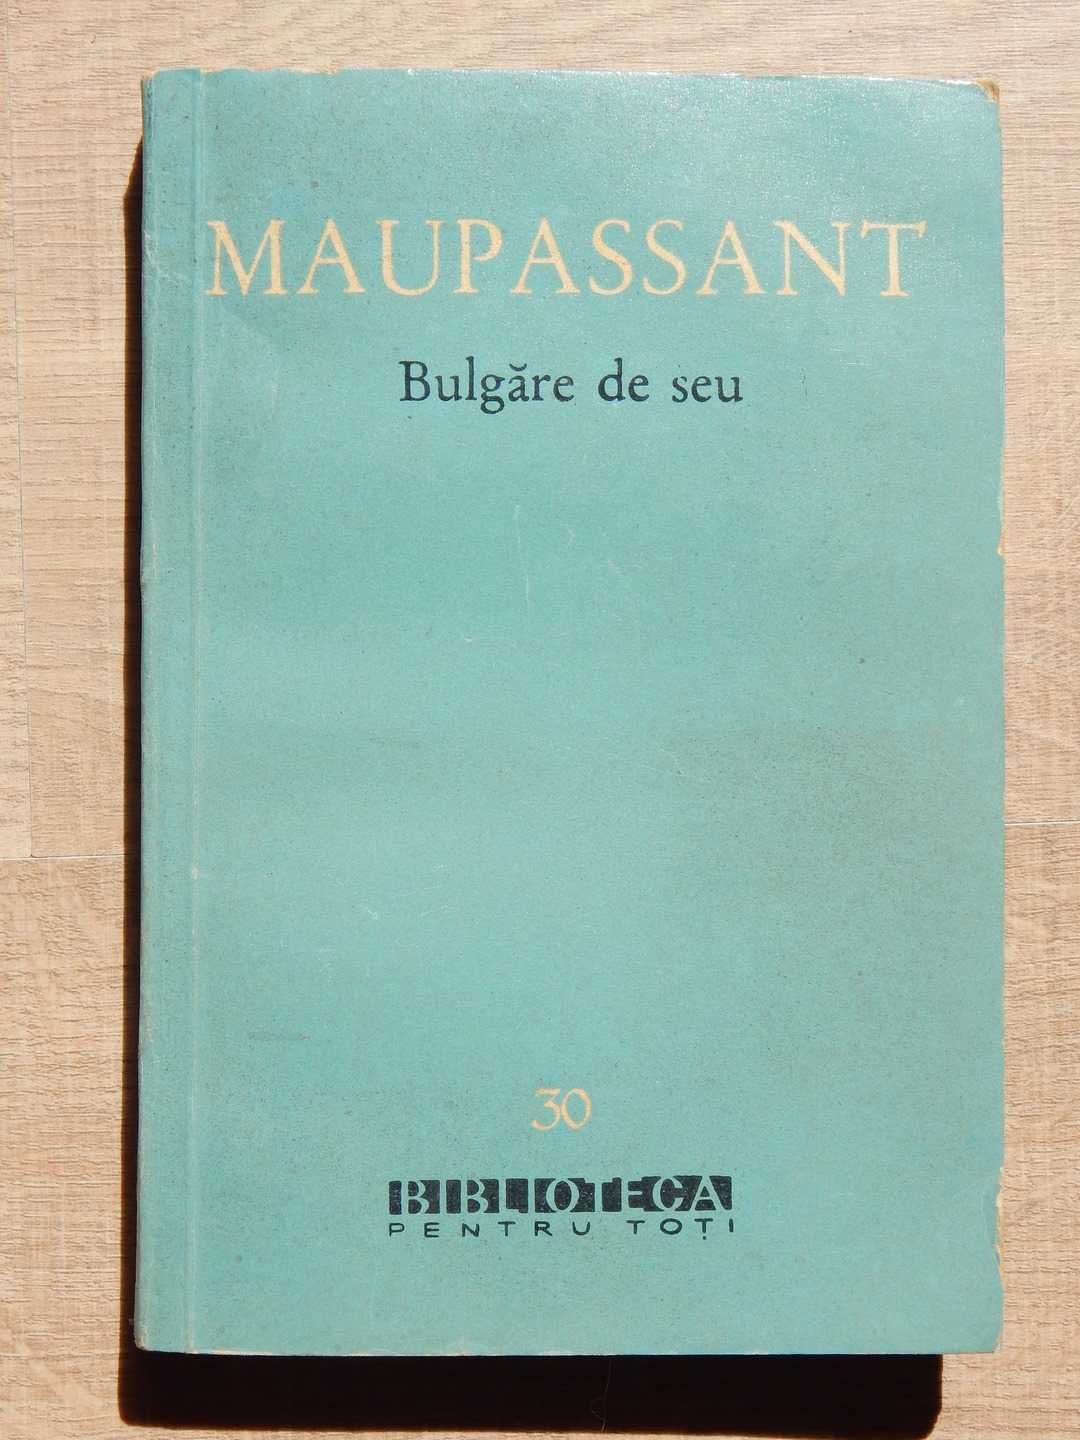 Bulgare de seu Guy de Maupassant BPT Editura de Stat Literatura 1960